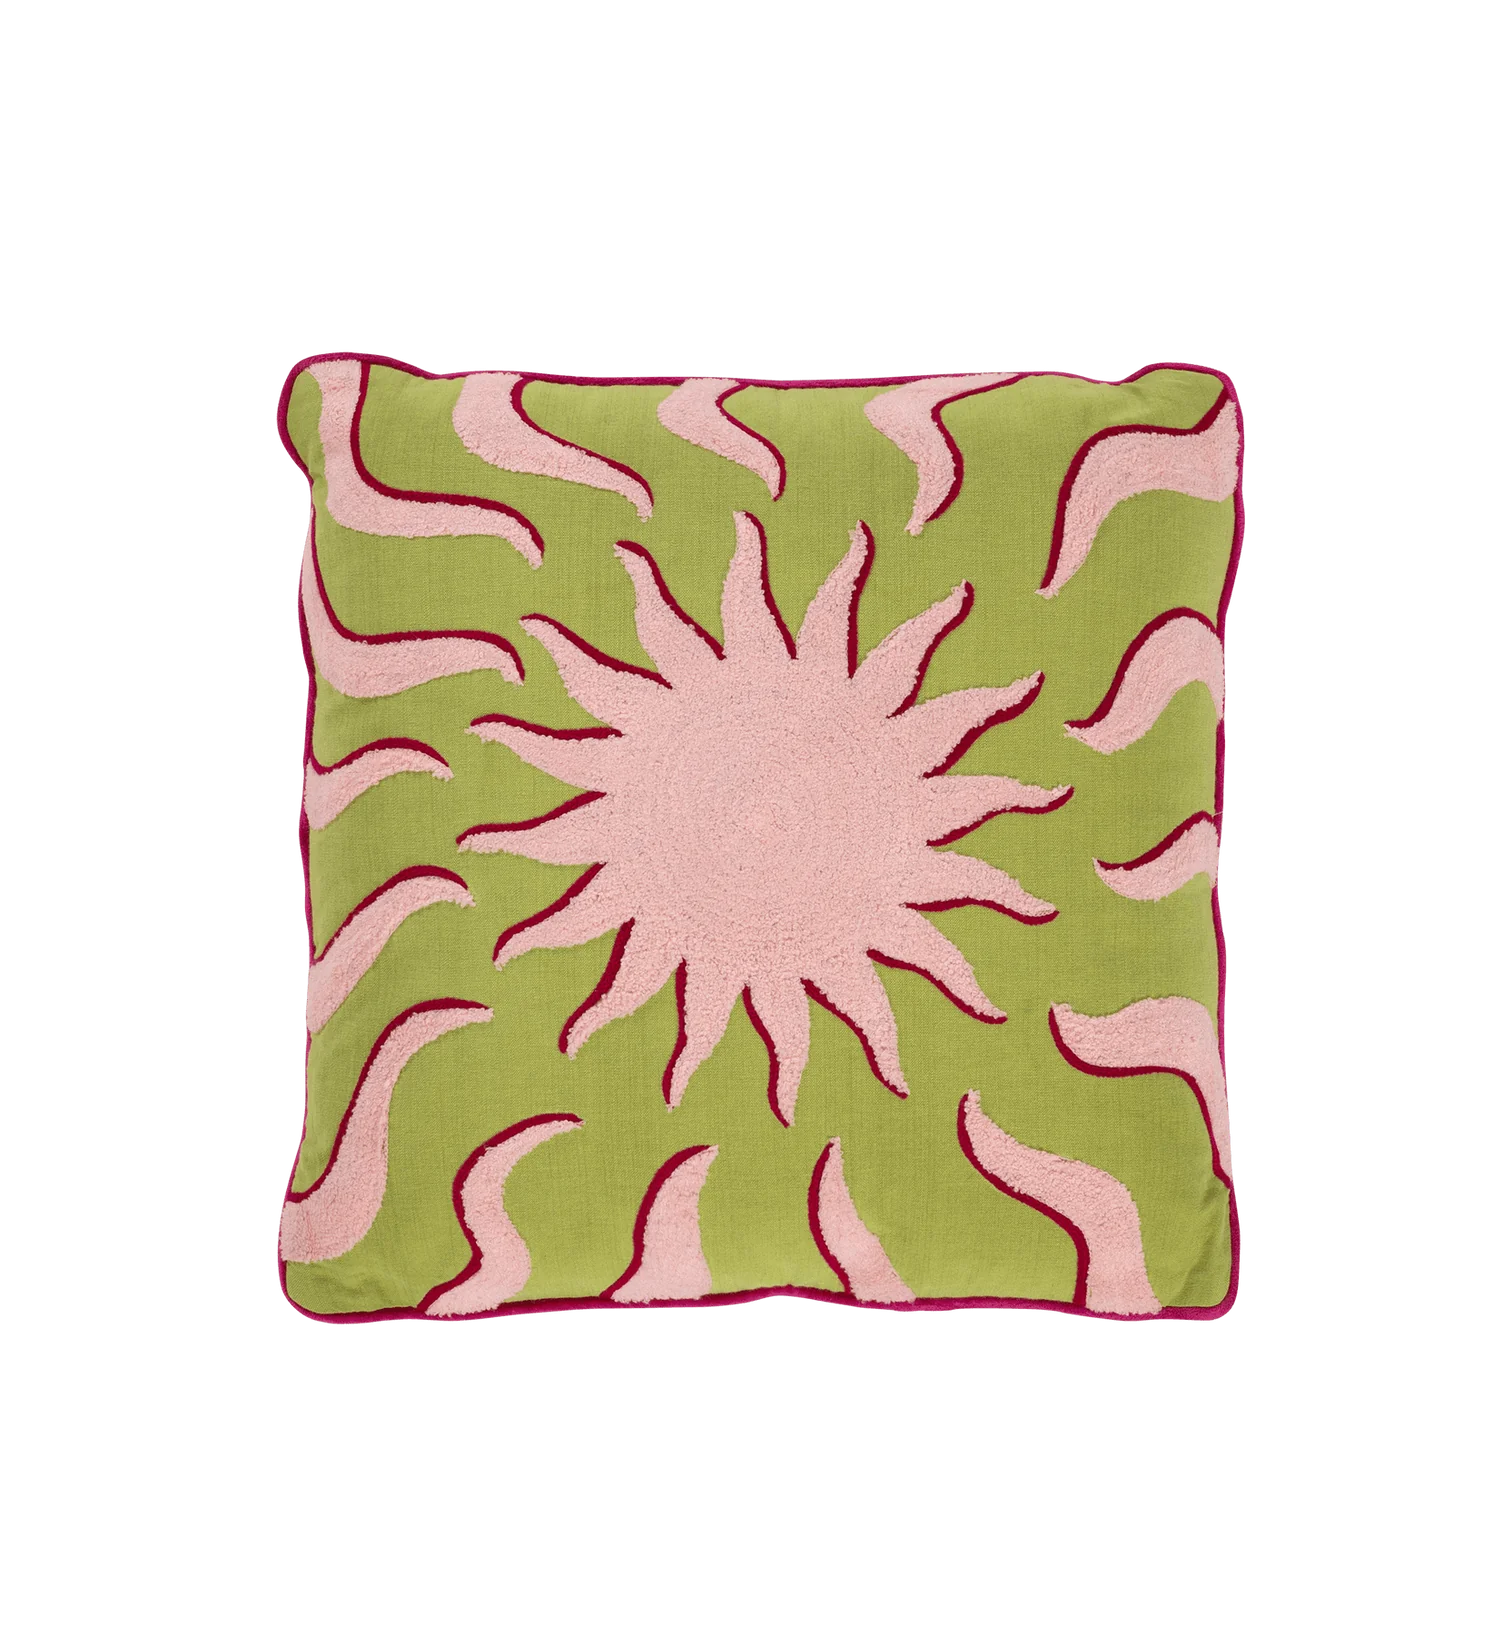 Embroidered Sunshine Cushion